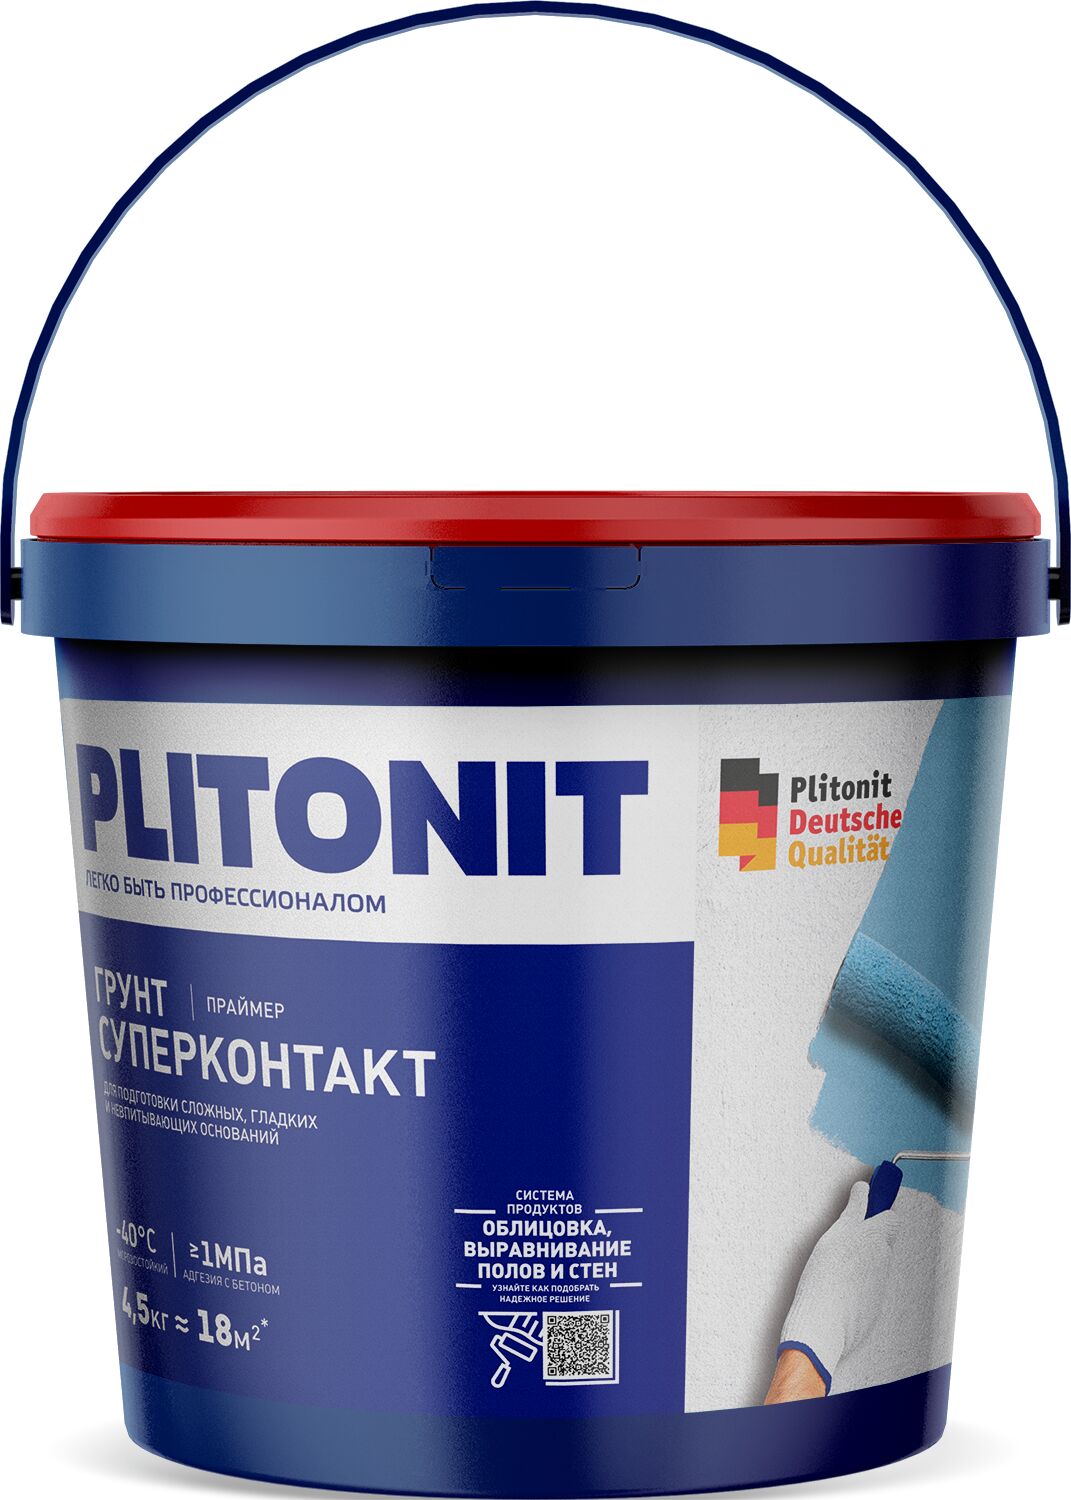 PLITONIT Грунт Супер Контакт -4,5 праймер для обработки невпитывающих, гладких оснований 